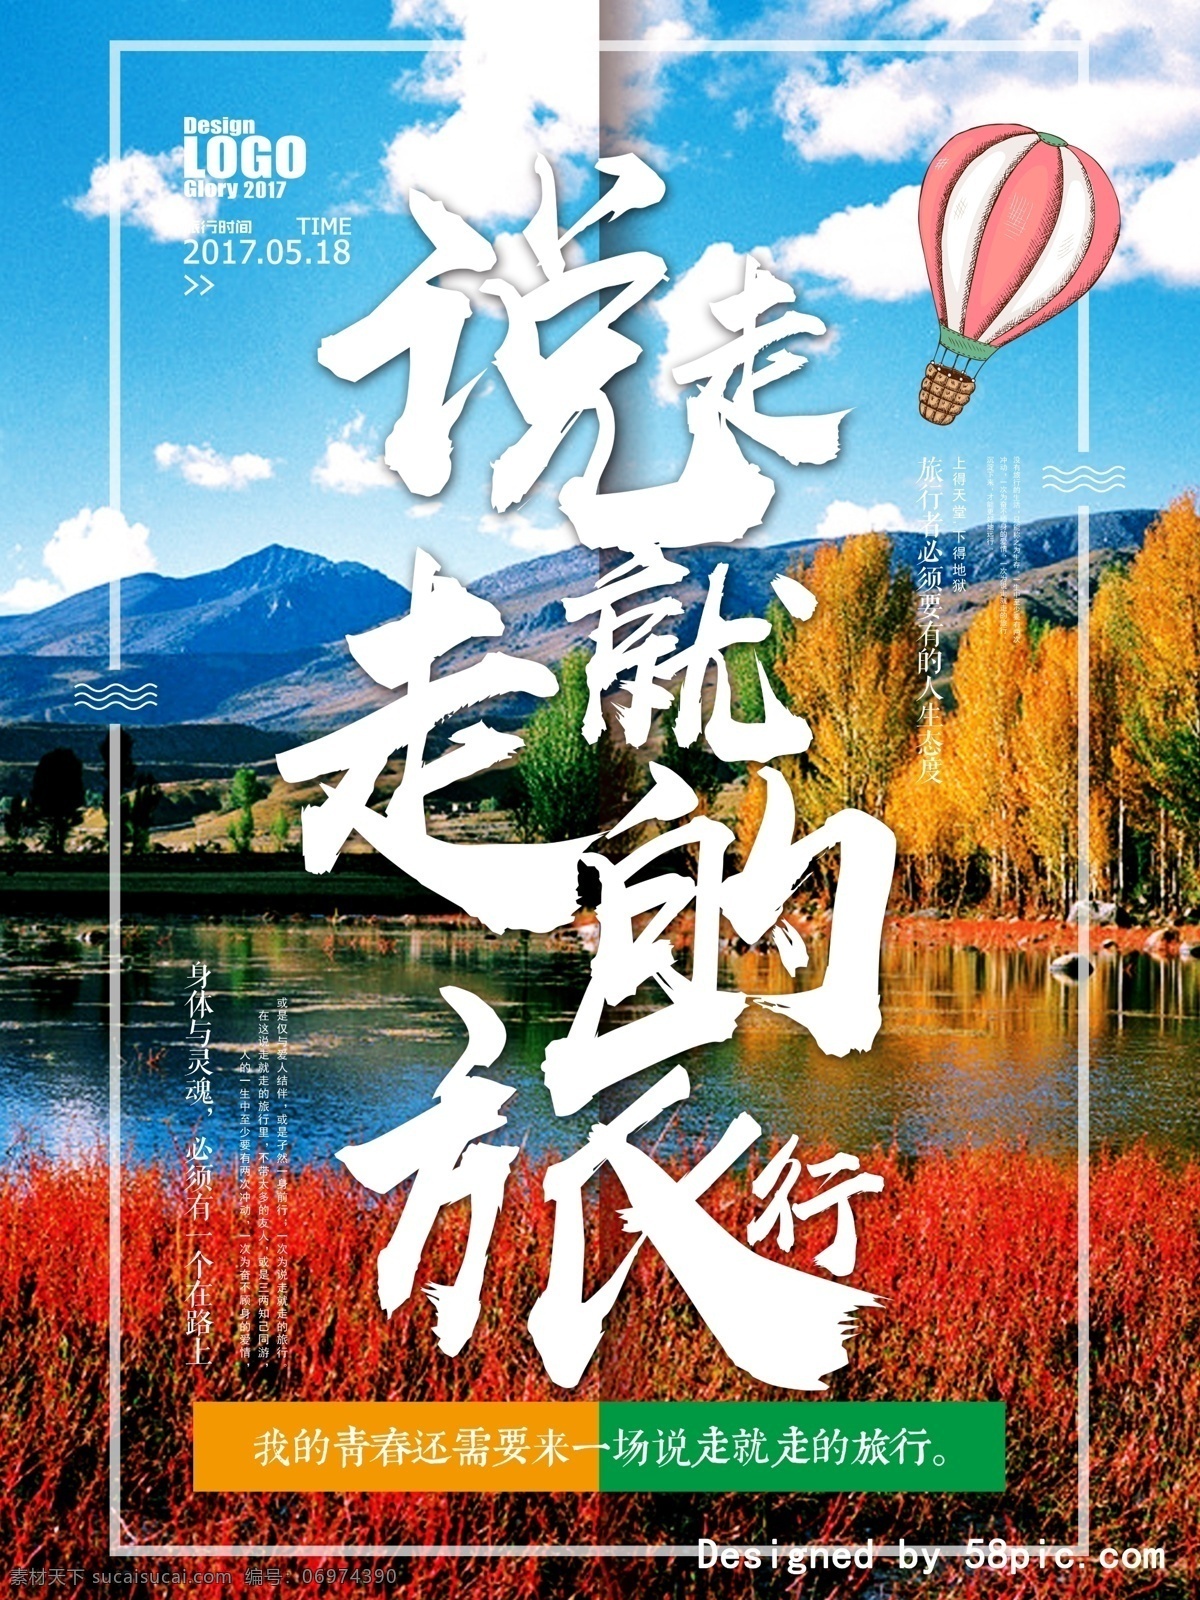 创意 字体 个性 旅游 海报 旅行社 宣传海报 说走就走 桂林 山水 风景 毕业旅游 旅行 6月 5月